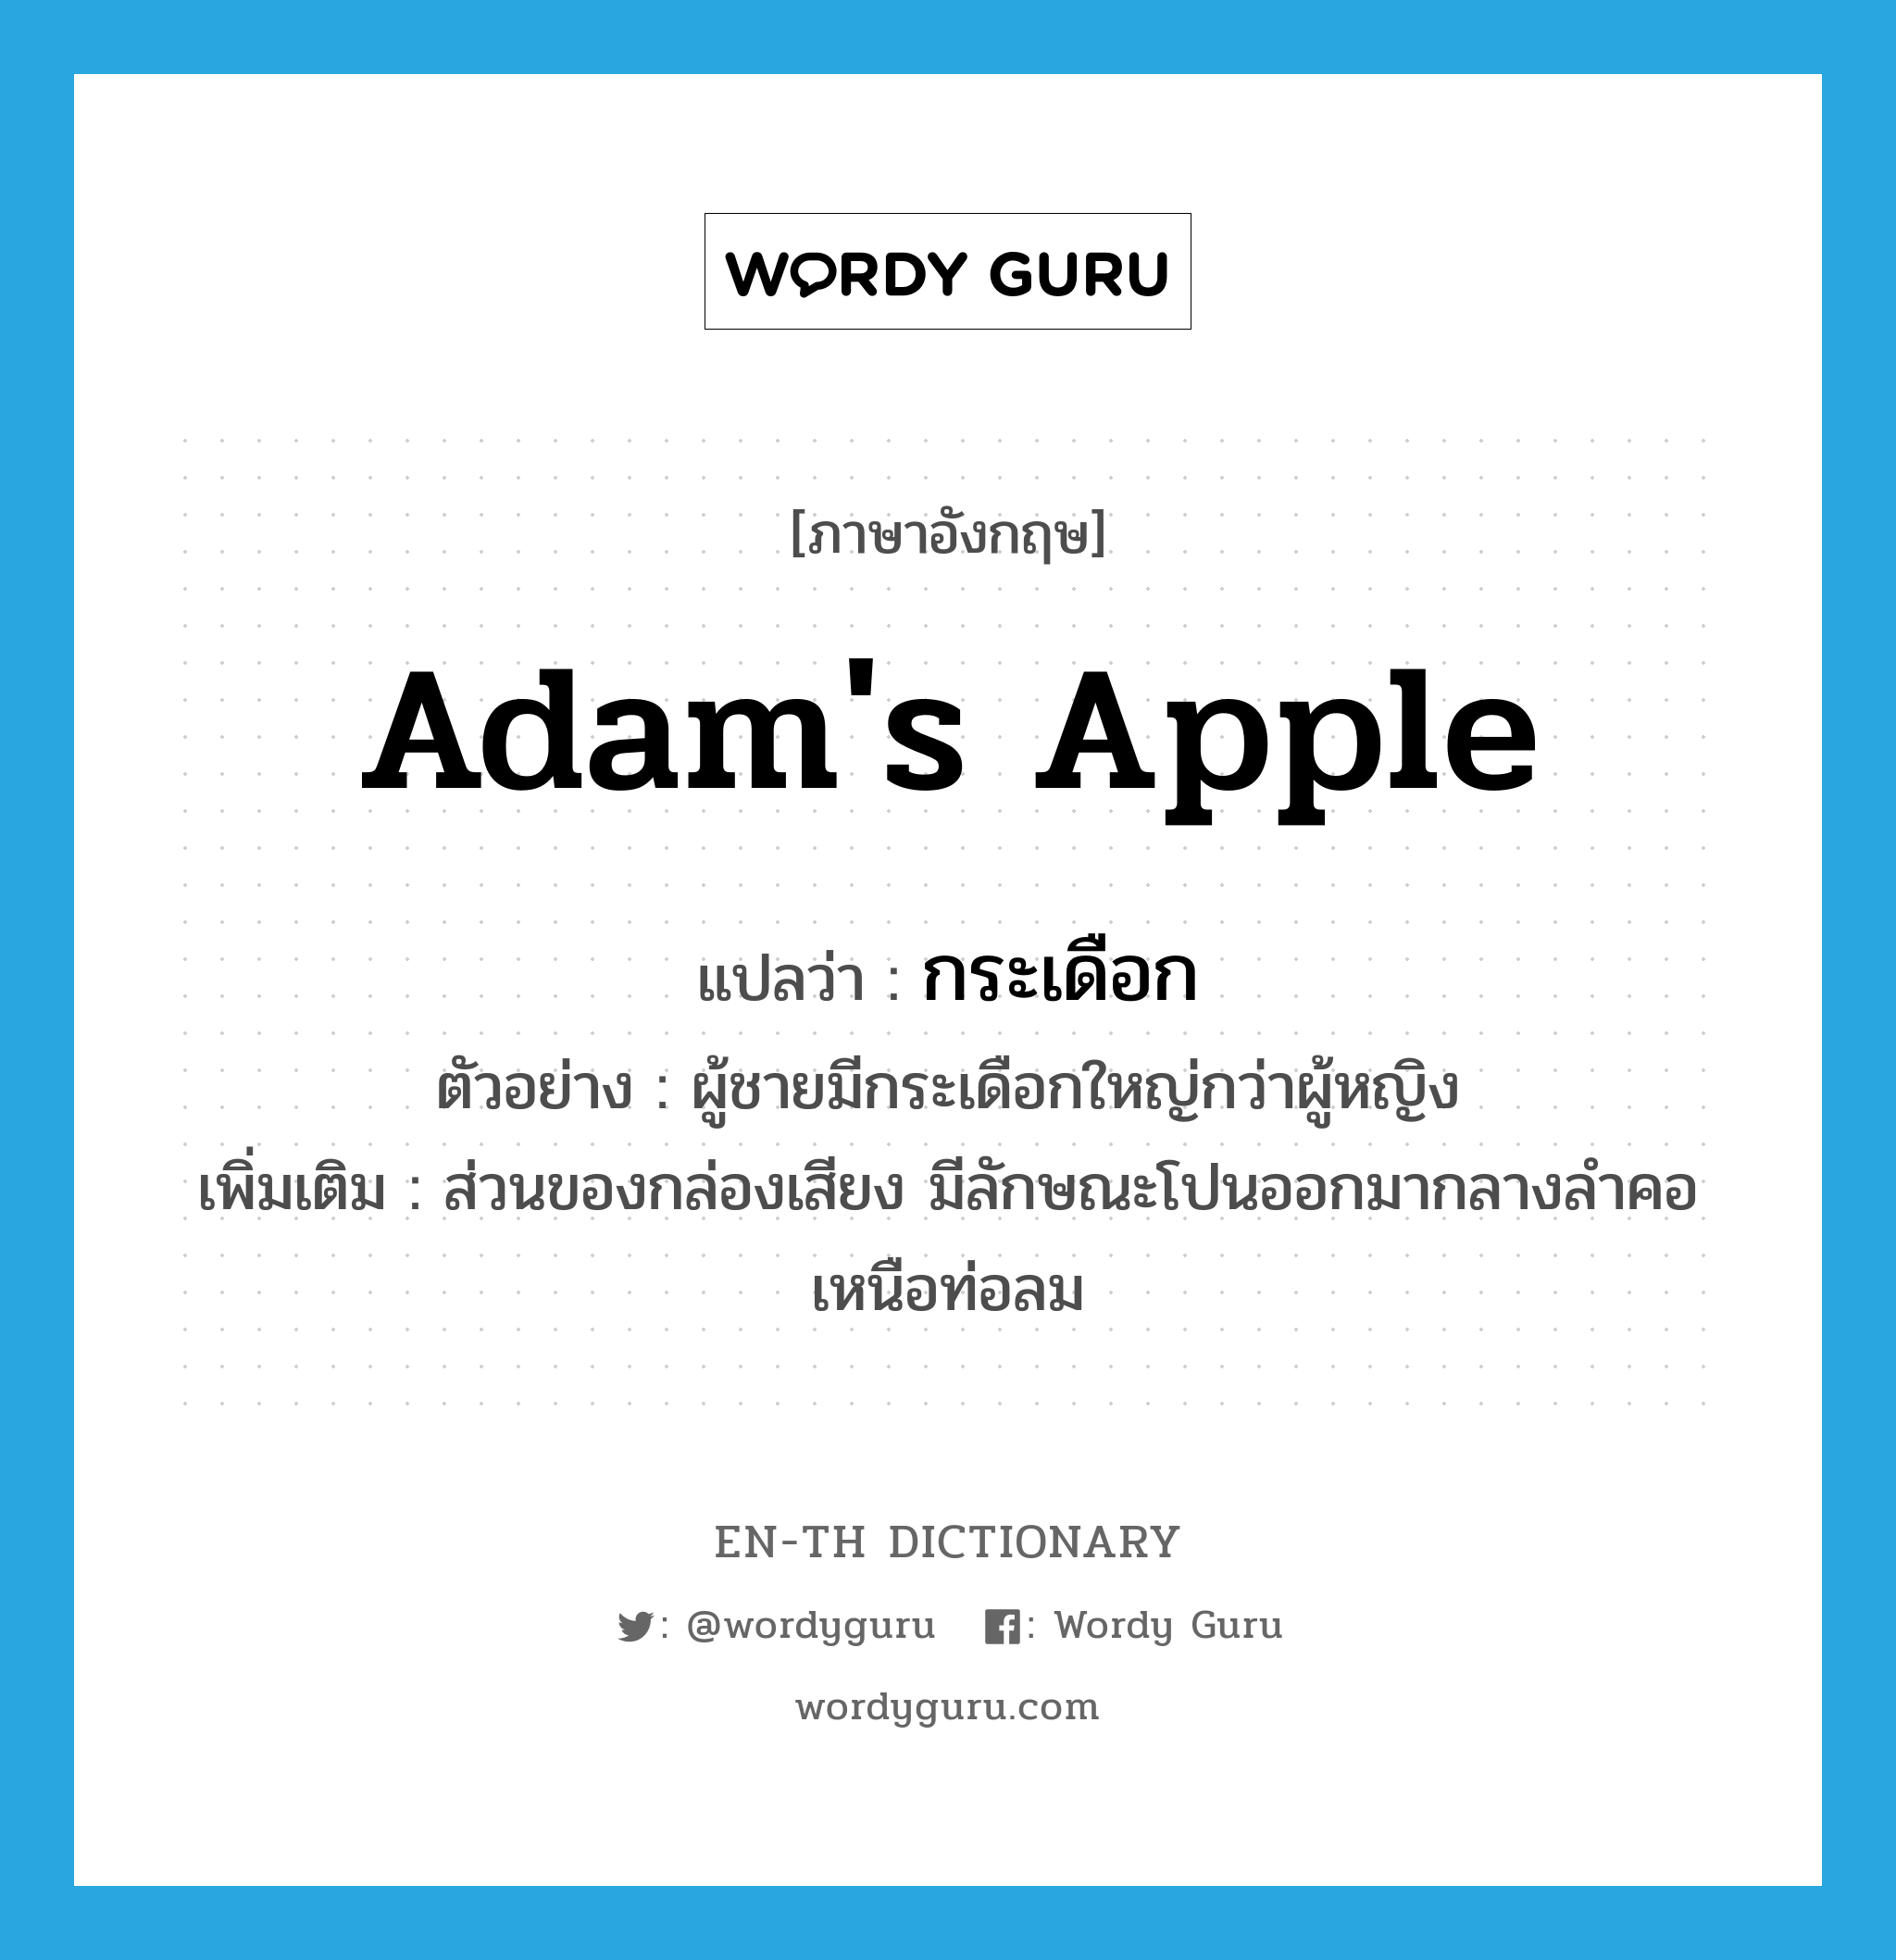 Adam's apple แปลว่า?, คำศัพท์ภาษาอังกฤษ Adam's apple แปลว่า กระเดือก ประเภท N ตัวอย่าง ผู้ชายมีกระเดือกใหญ่กว่าผู้หญิง เพิ่มเติม ส่วนของกล่องเสียง มีลักษณะโปนออกมากลางลำคอเหนือท่อลม หมวด N